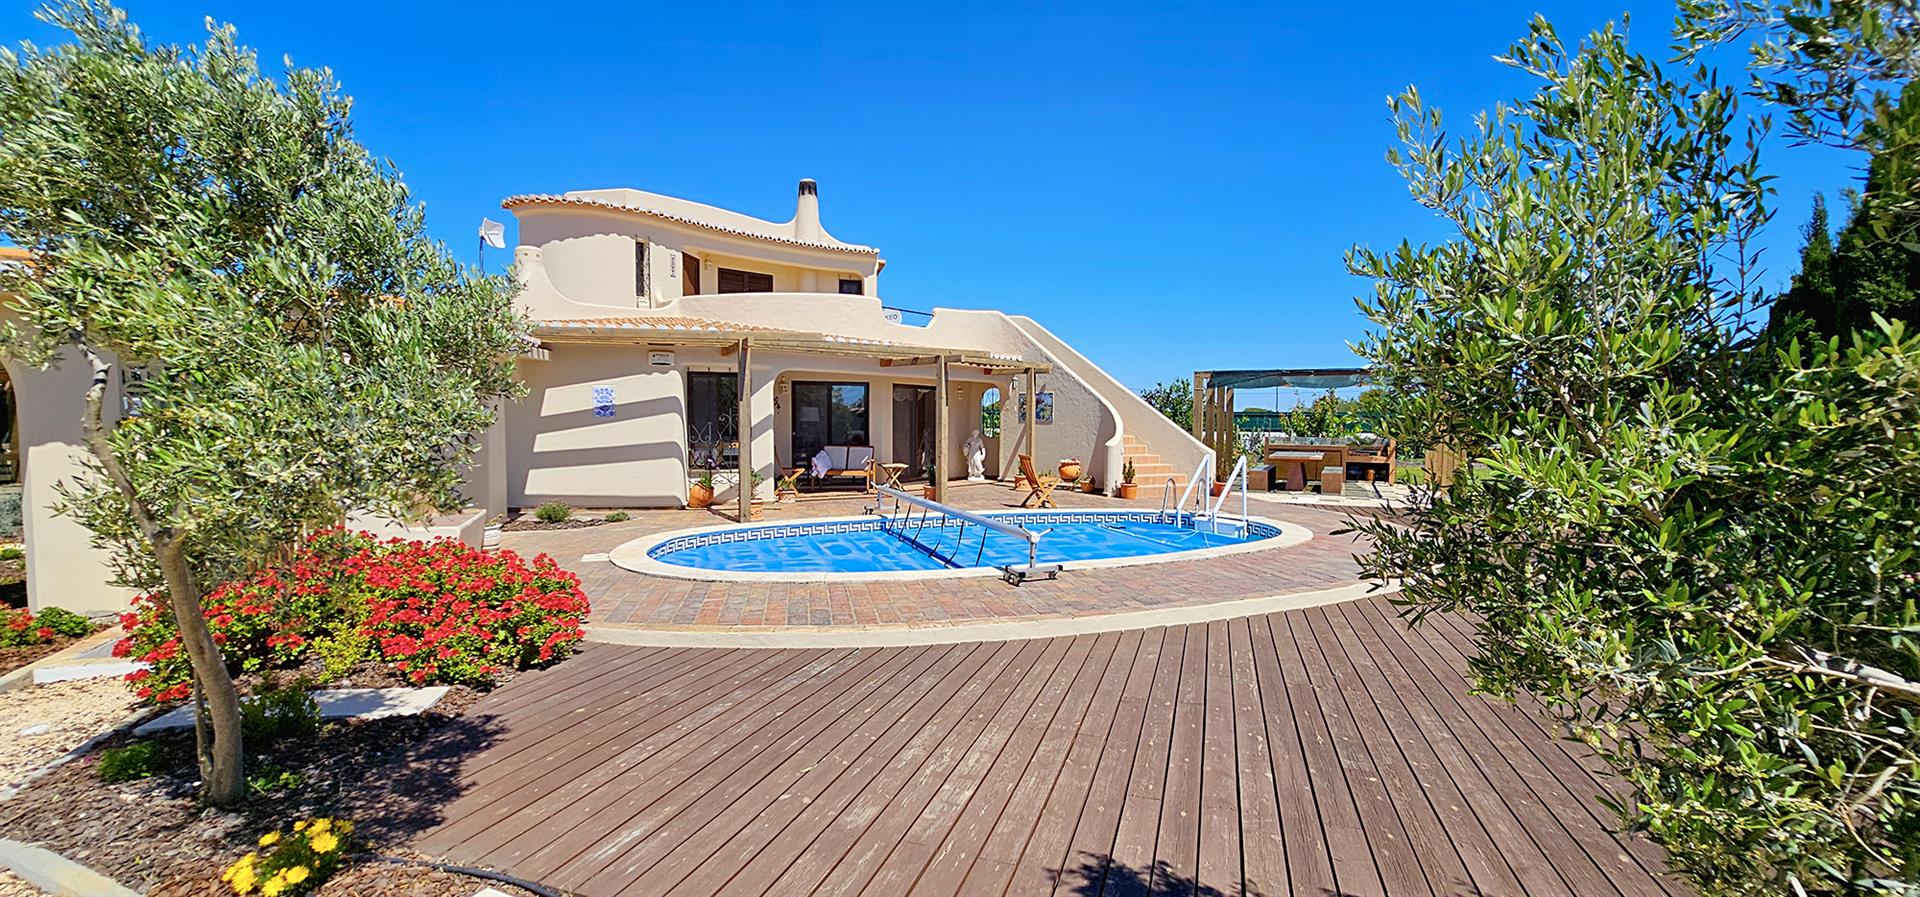 Bem-Vindo à sua futura casa no belo Algarve